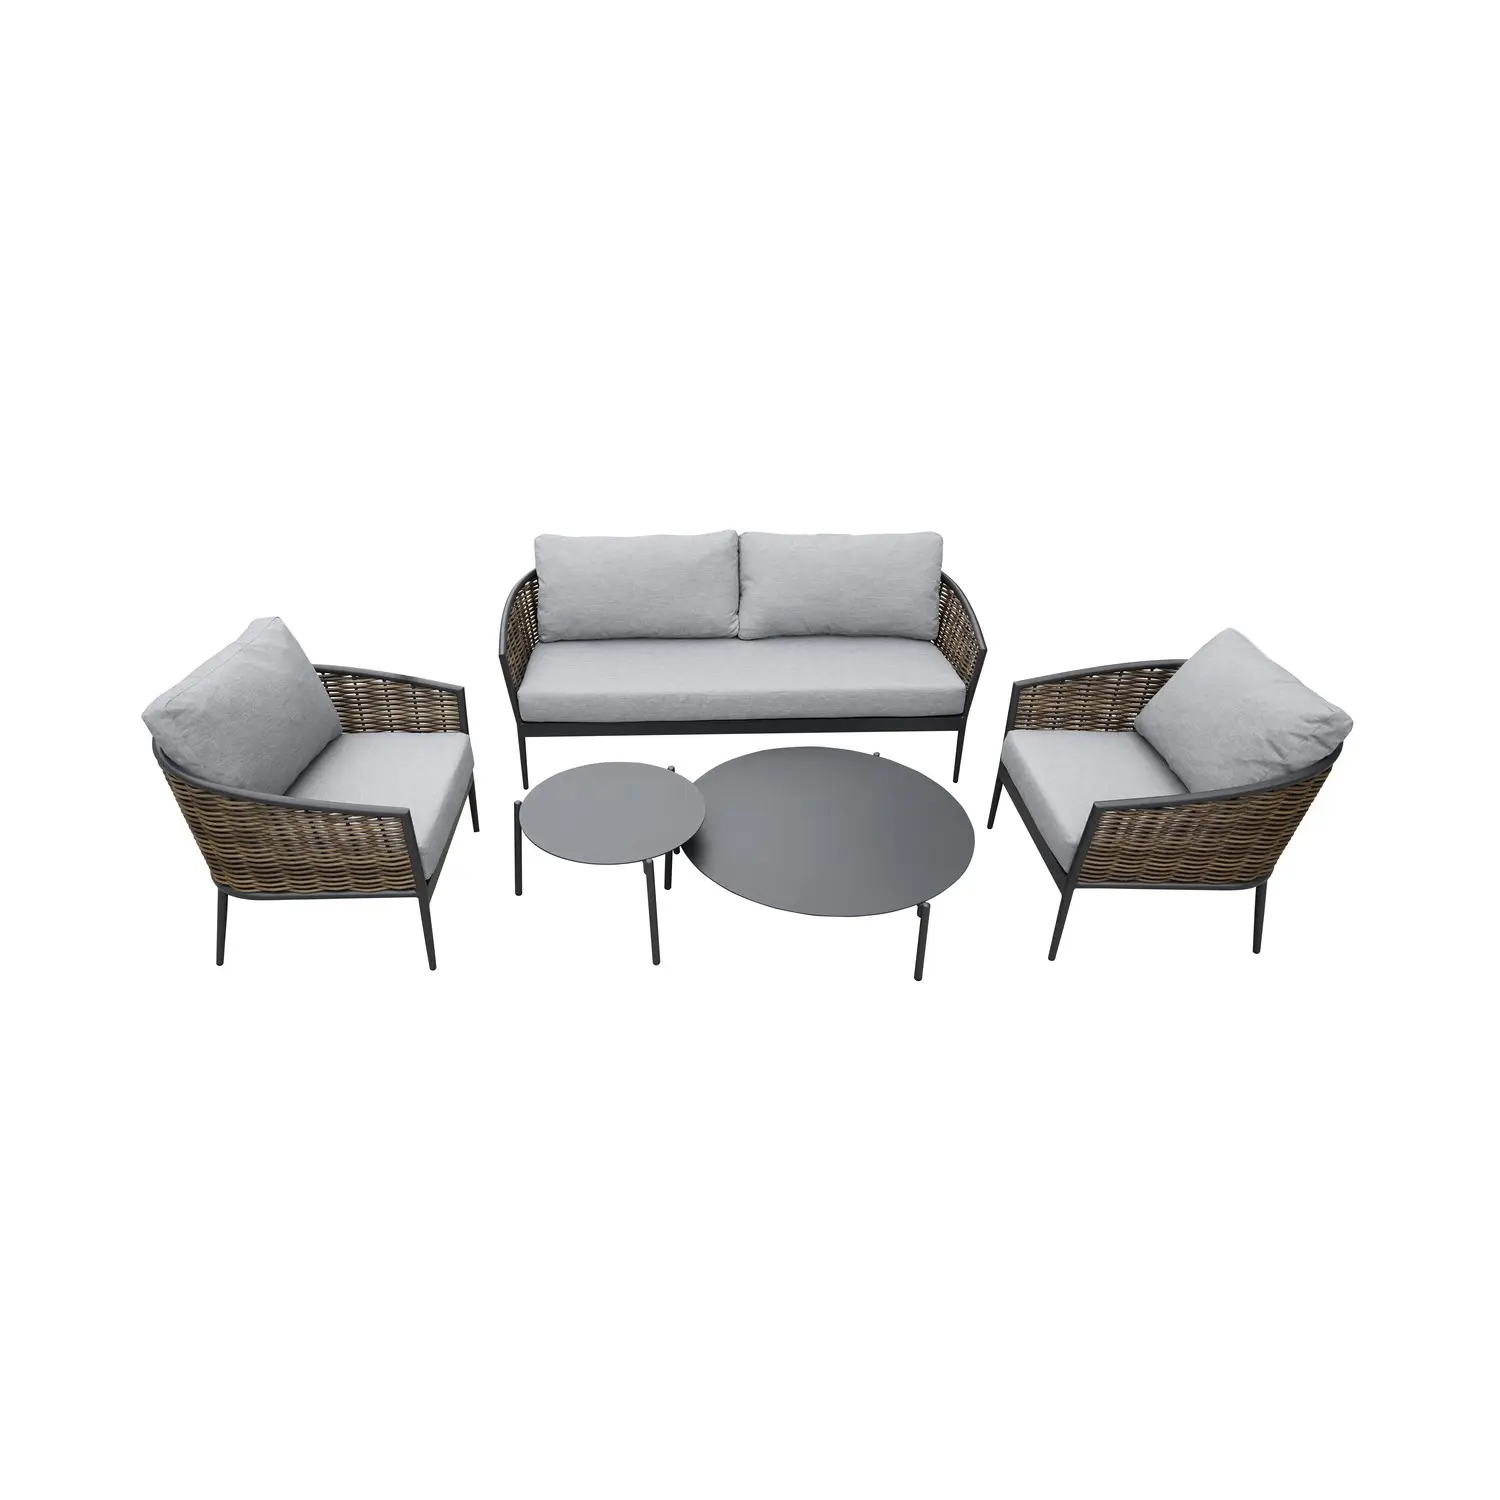 Cassandra набор из алюминия и плетеного садового дивана из ротанга с 4 сиденьями и 2 столами из высококачественного материала